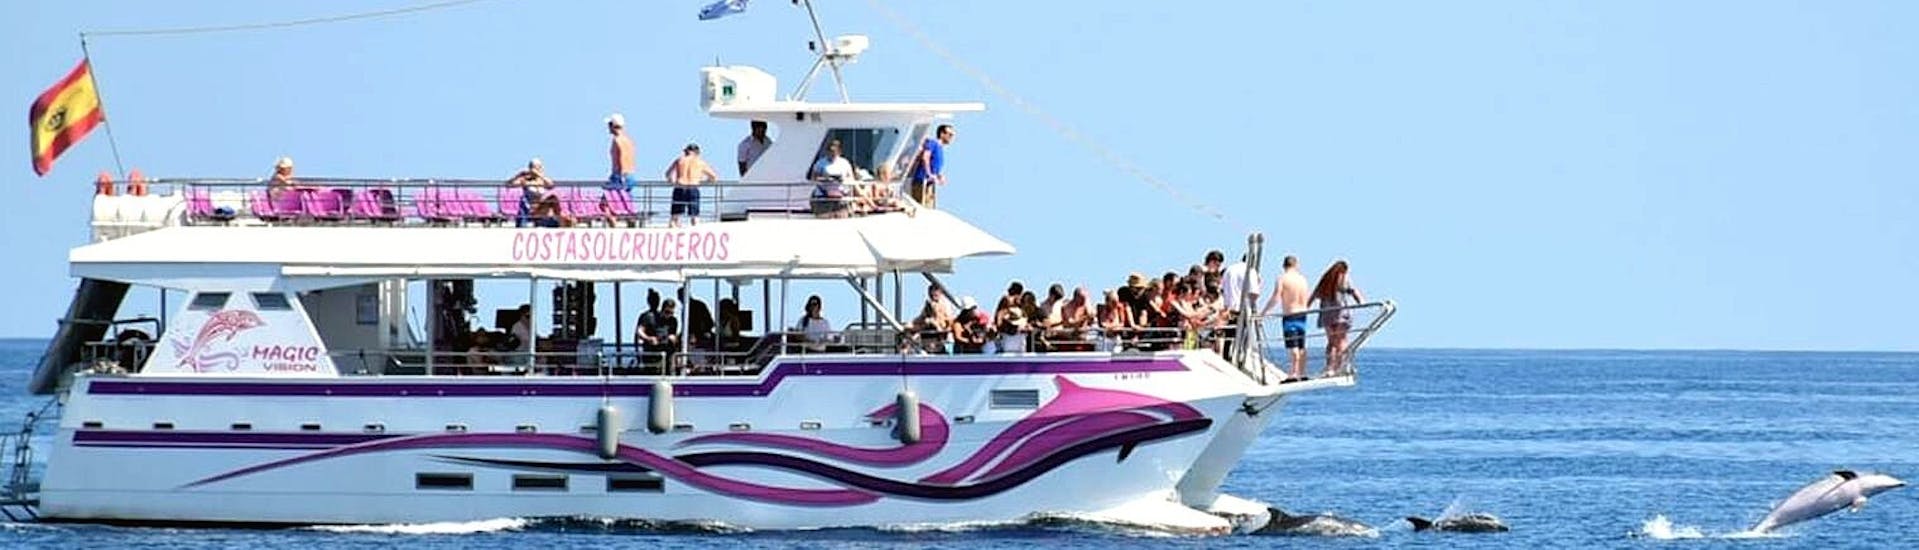 El catamarán Magic Vision navegando por la bahía de Benalmádena con los participantes divirtiéndose a bordo, durante un paseo en catamarán en Benalmádena con avistamiento de delfines con Costasol Cruceros.